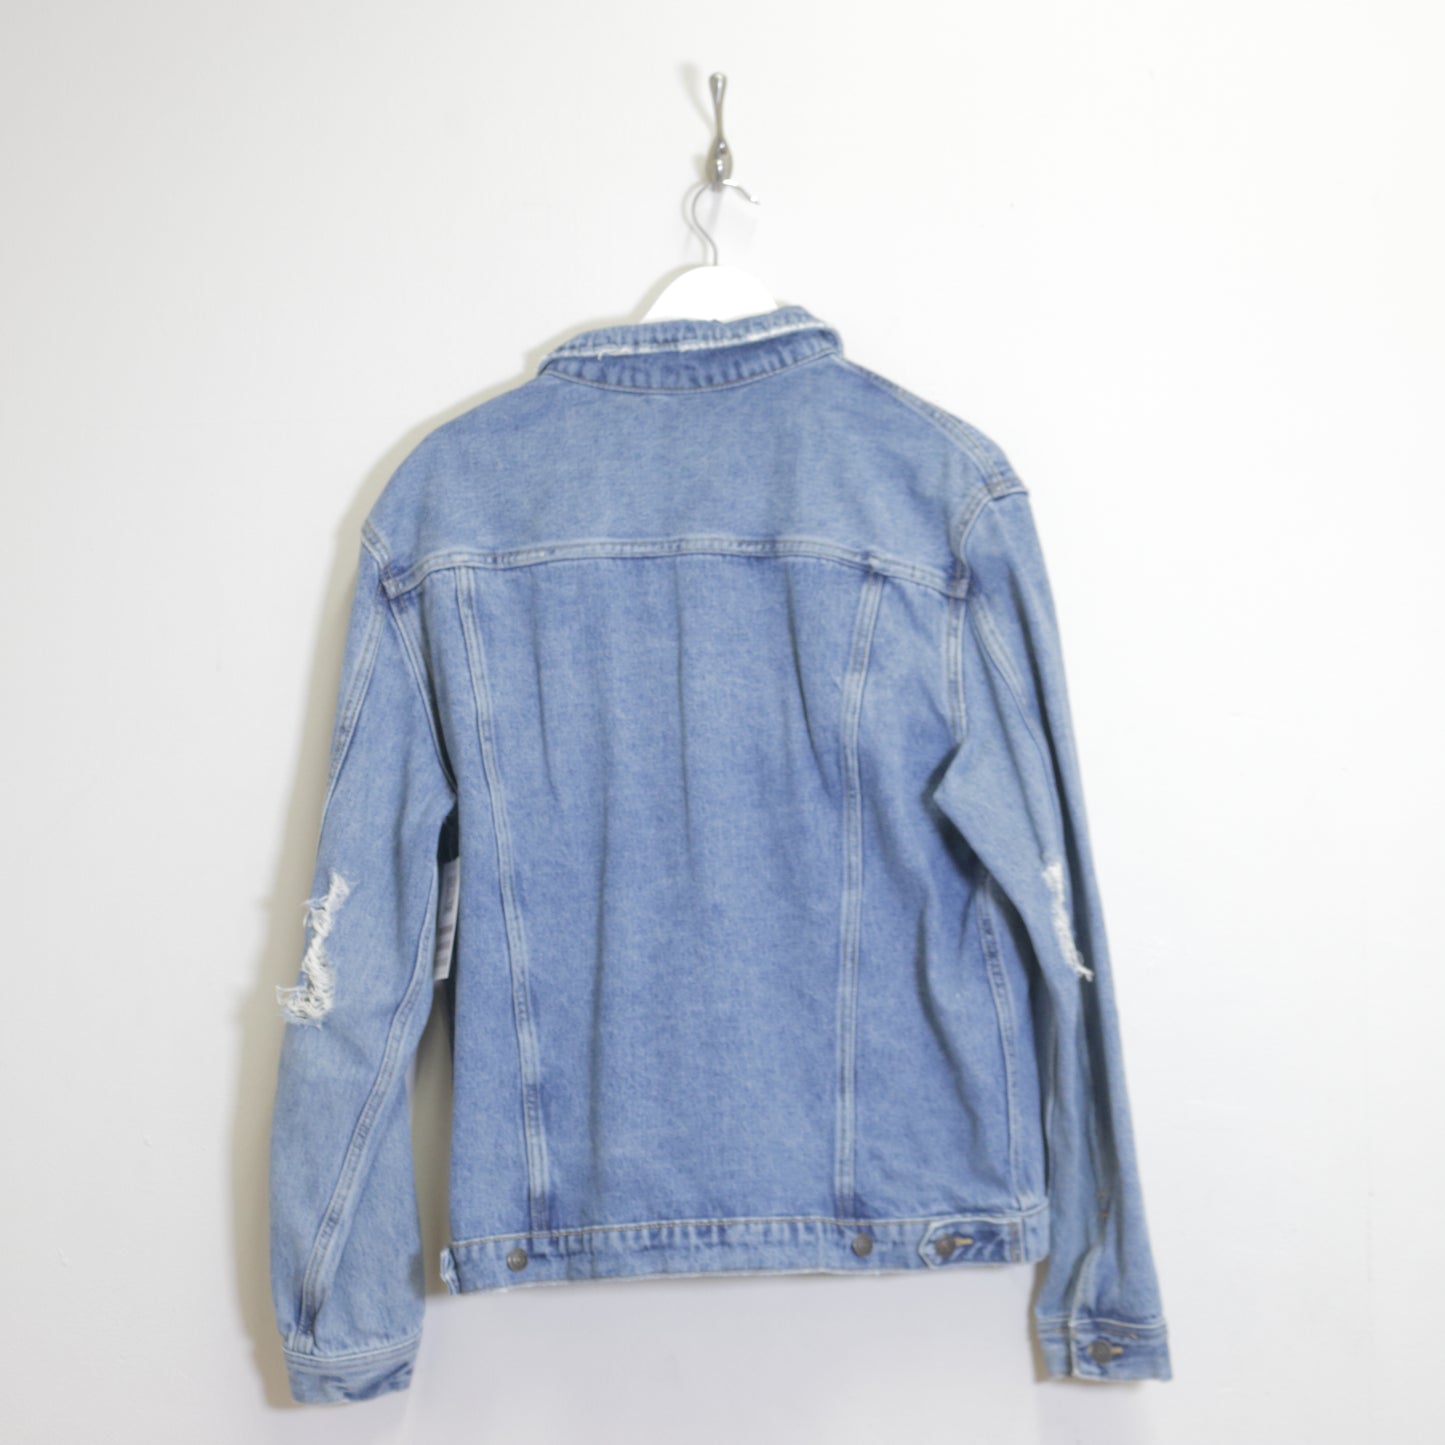 Vintage Denim jacket in blue. Best fits L